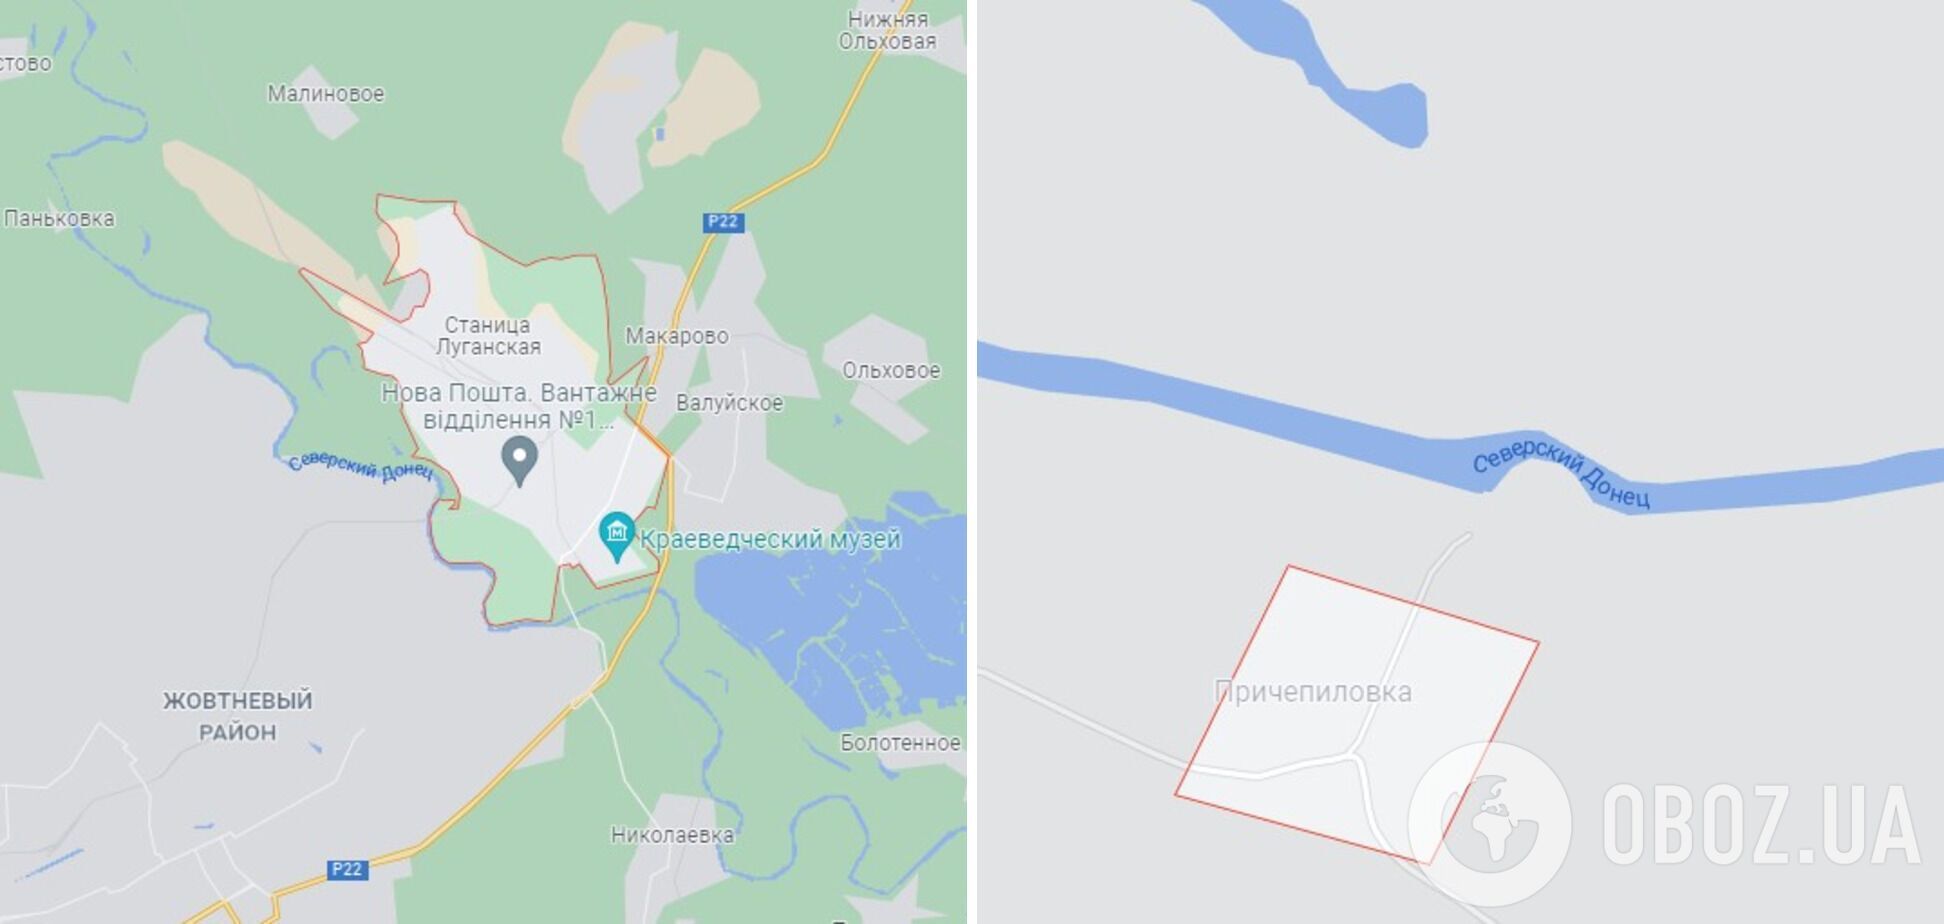 Огонь открывали поблизости Причепиловки и Станицы Луганской